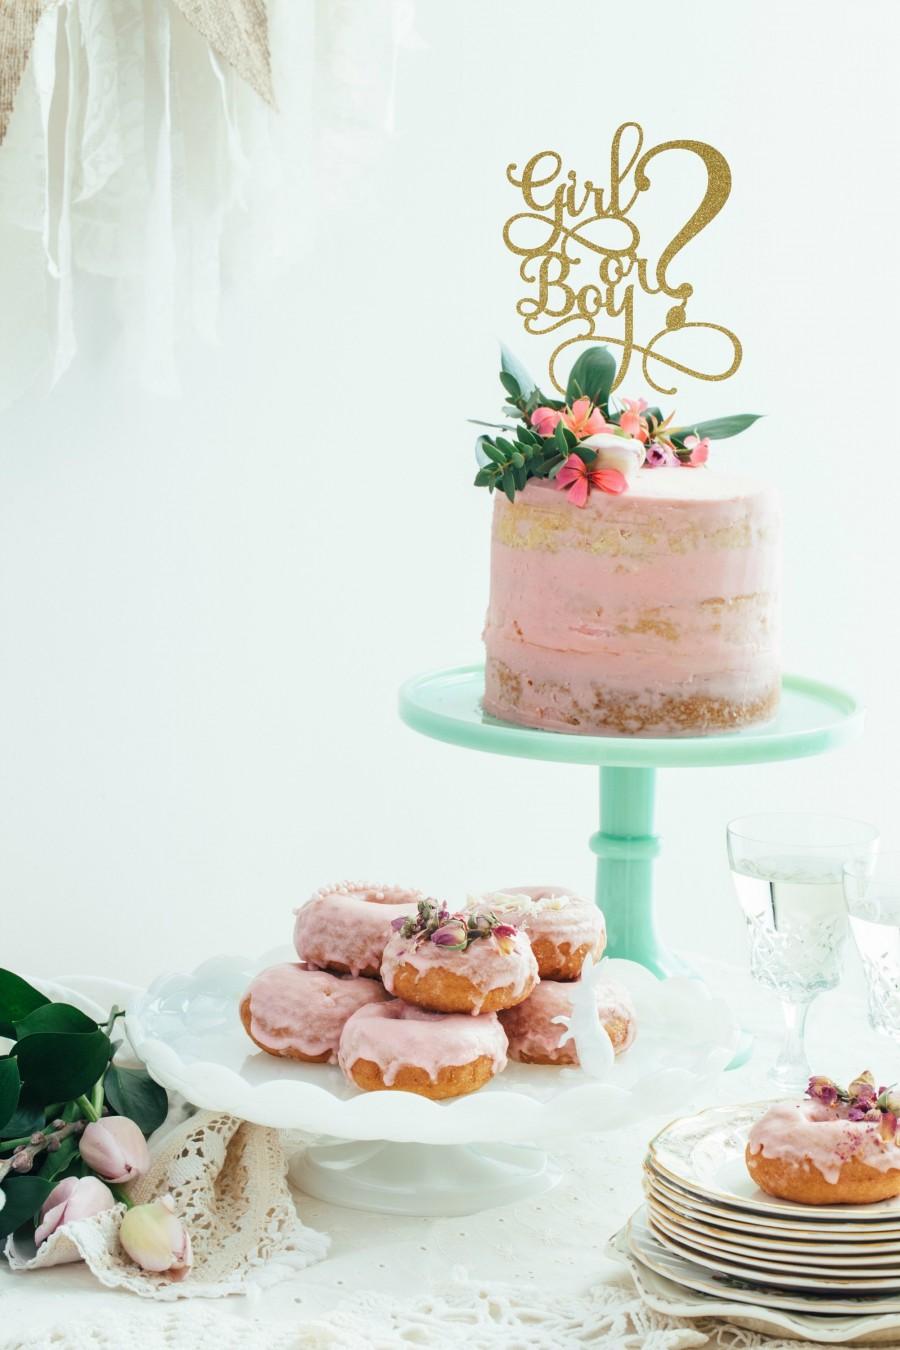 زفاف - Gender Reveal Cake Topper - Girl or Boy Cake Topper - Pink or Blue - Gender Reveal Party - Baby Shower Cake Topper - Glitter Cake Topper